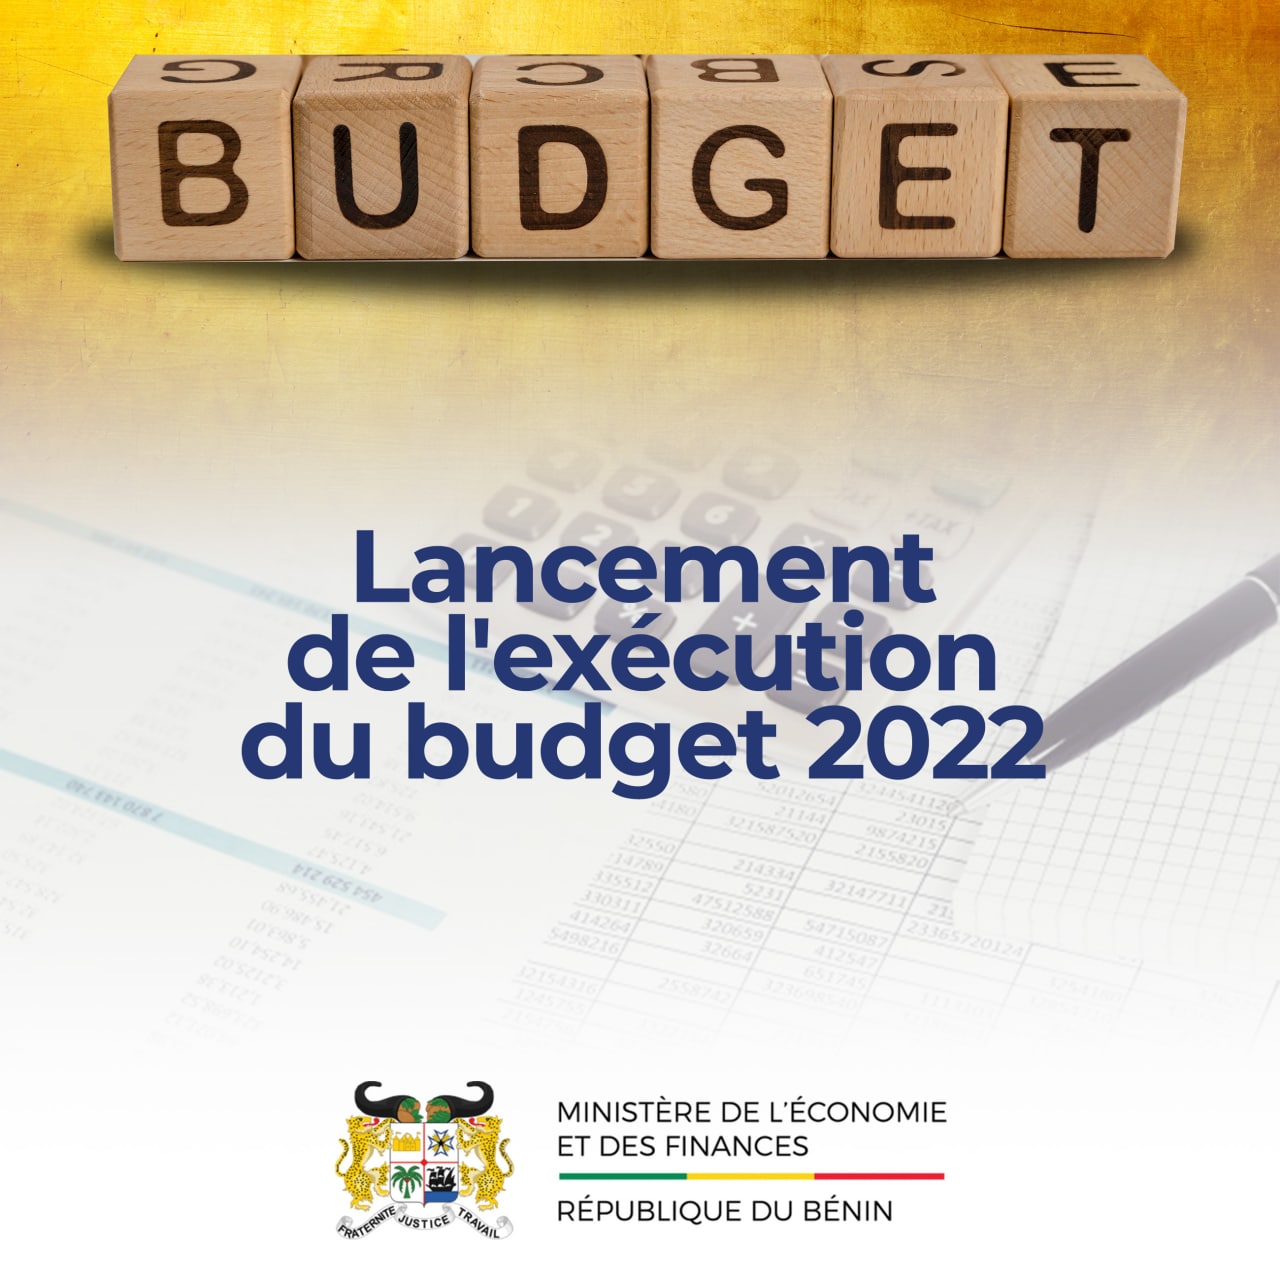 Budget de l’État gestion 2022 : L’exécution en mode programme lancée